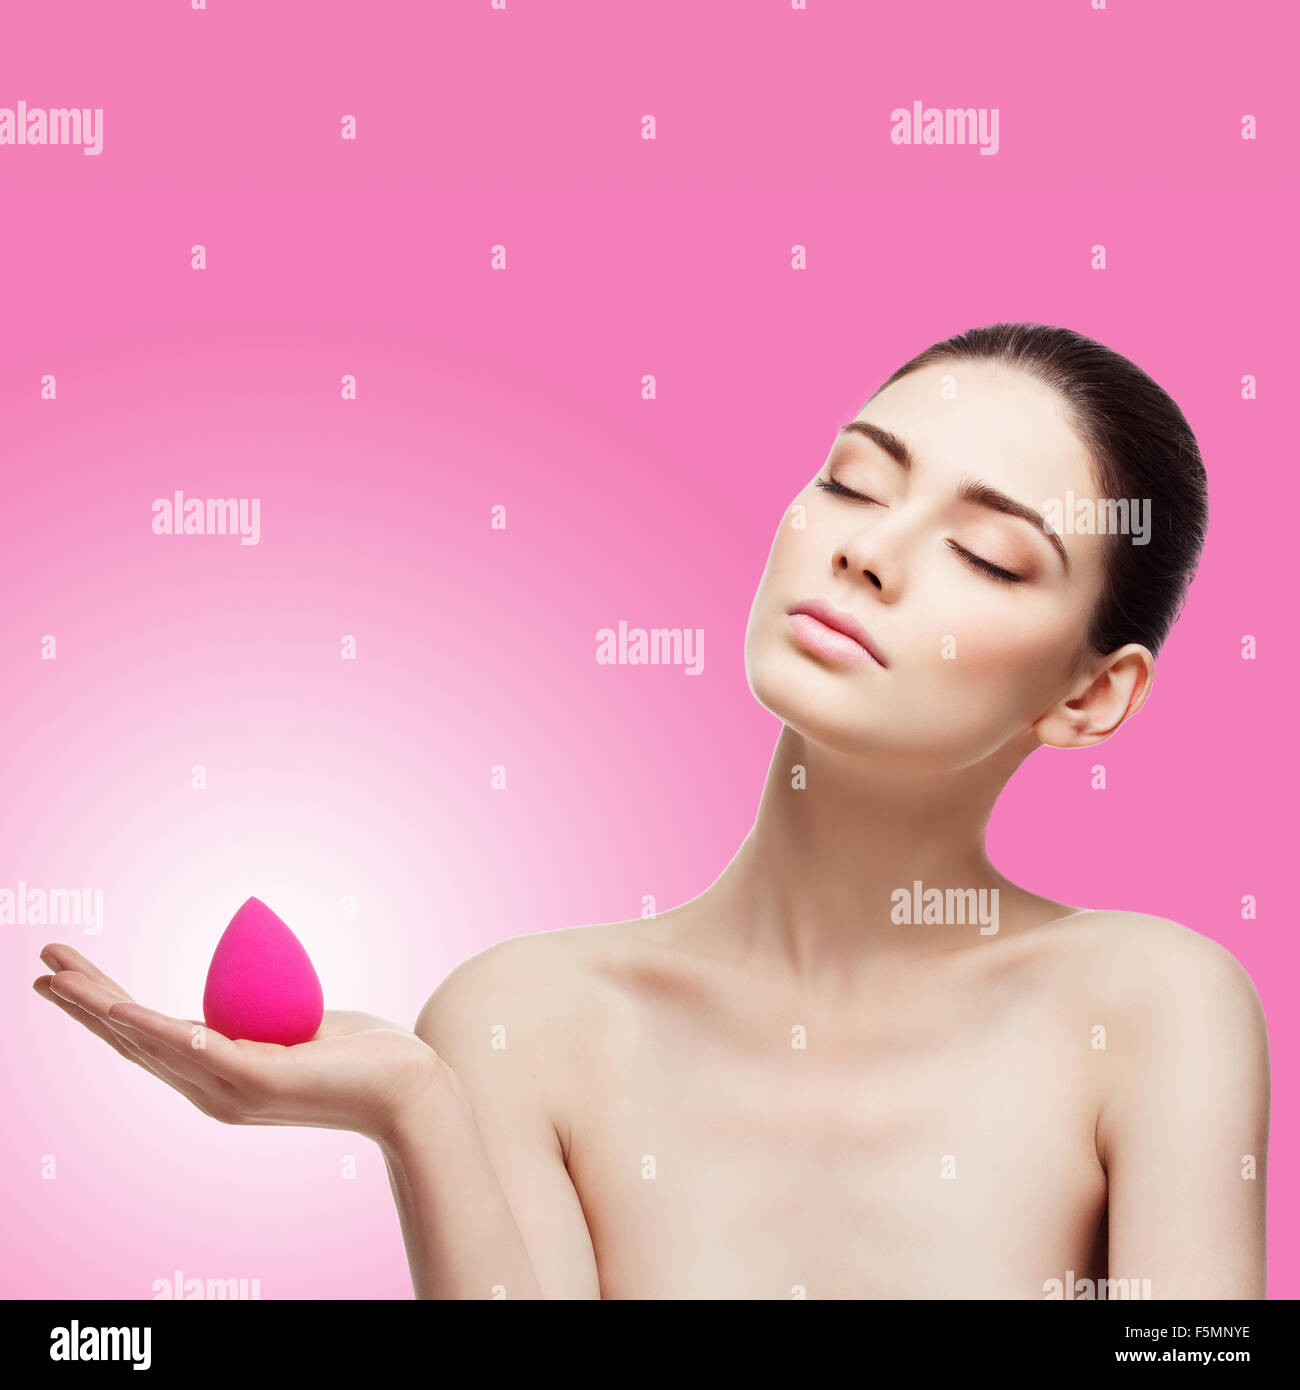 Girl with beauty sponge Stock Photo